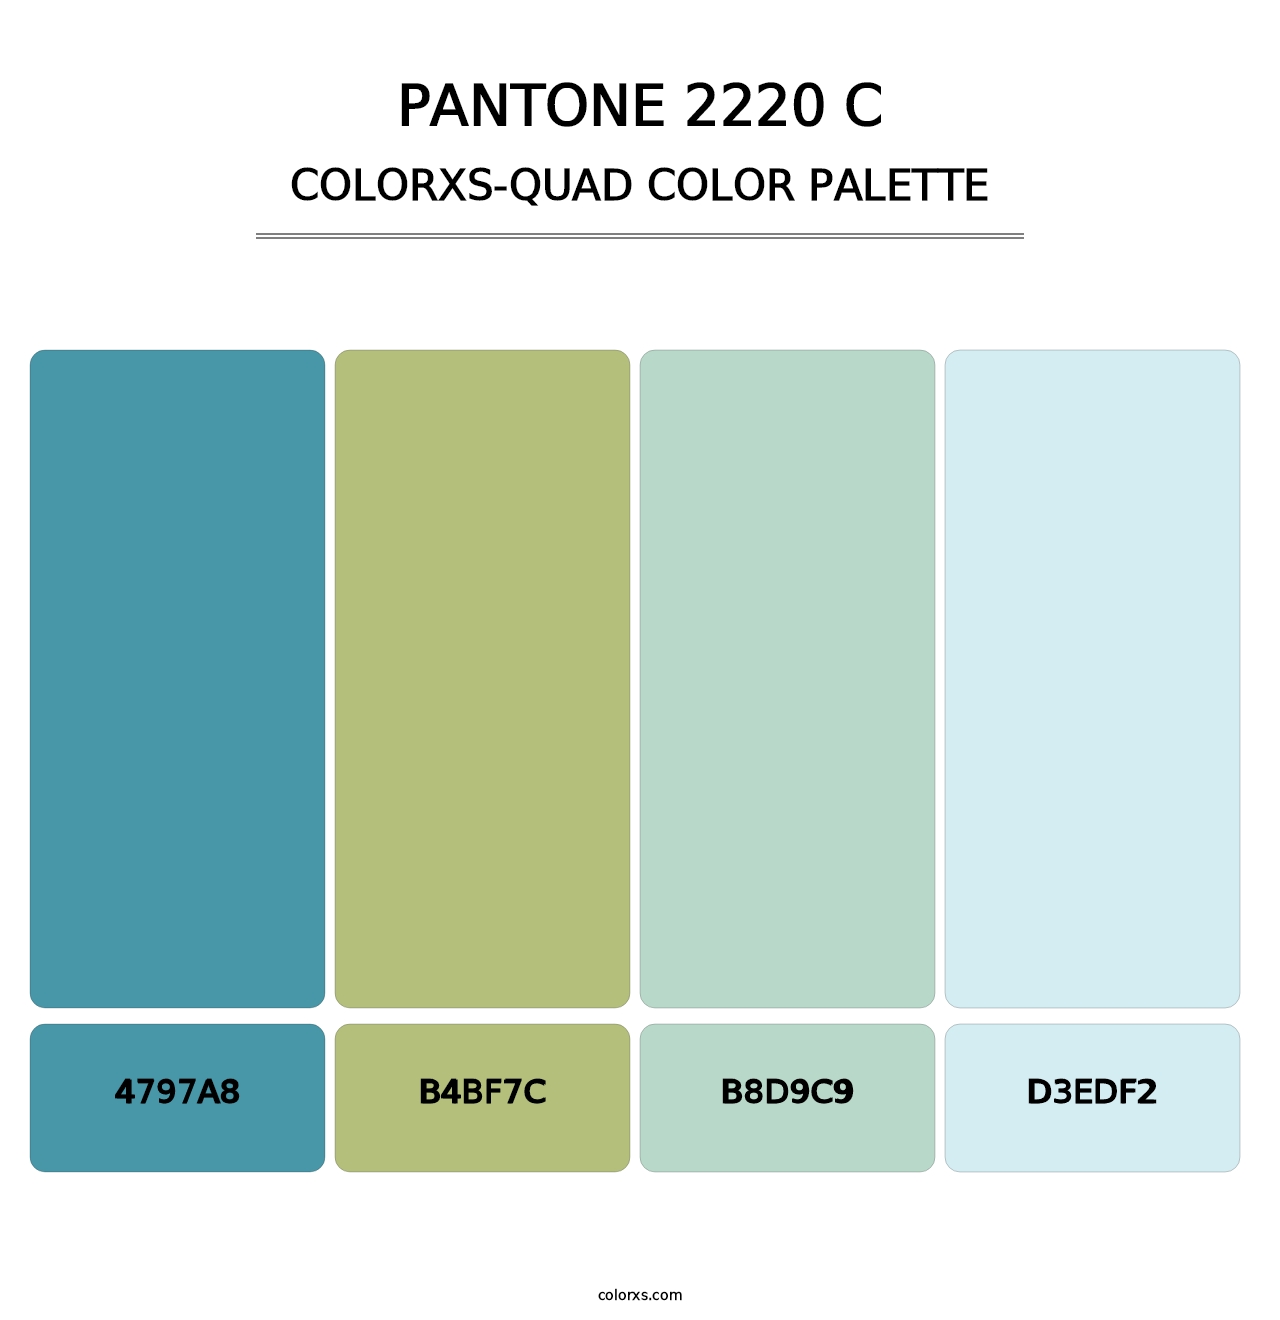 PANTONE 2220 C - Colorxs Quad Palette